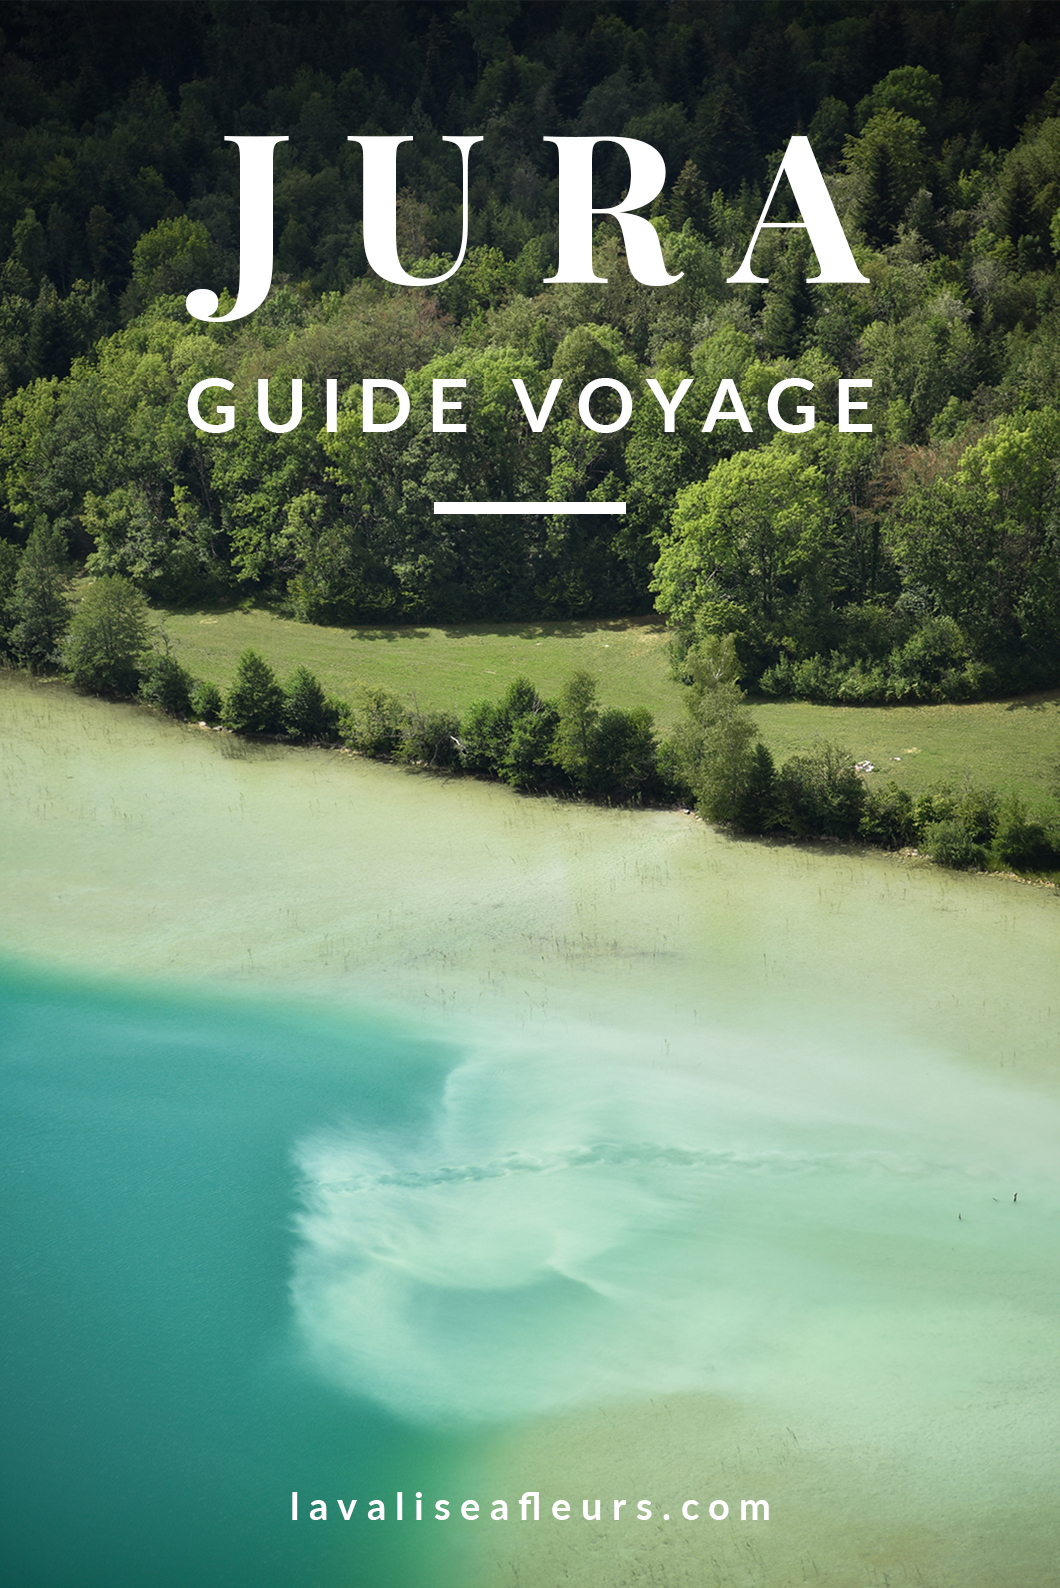 Guide voyage du Jura en France